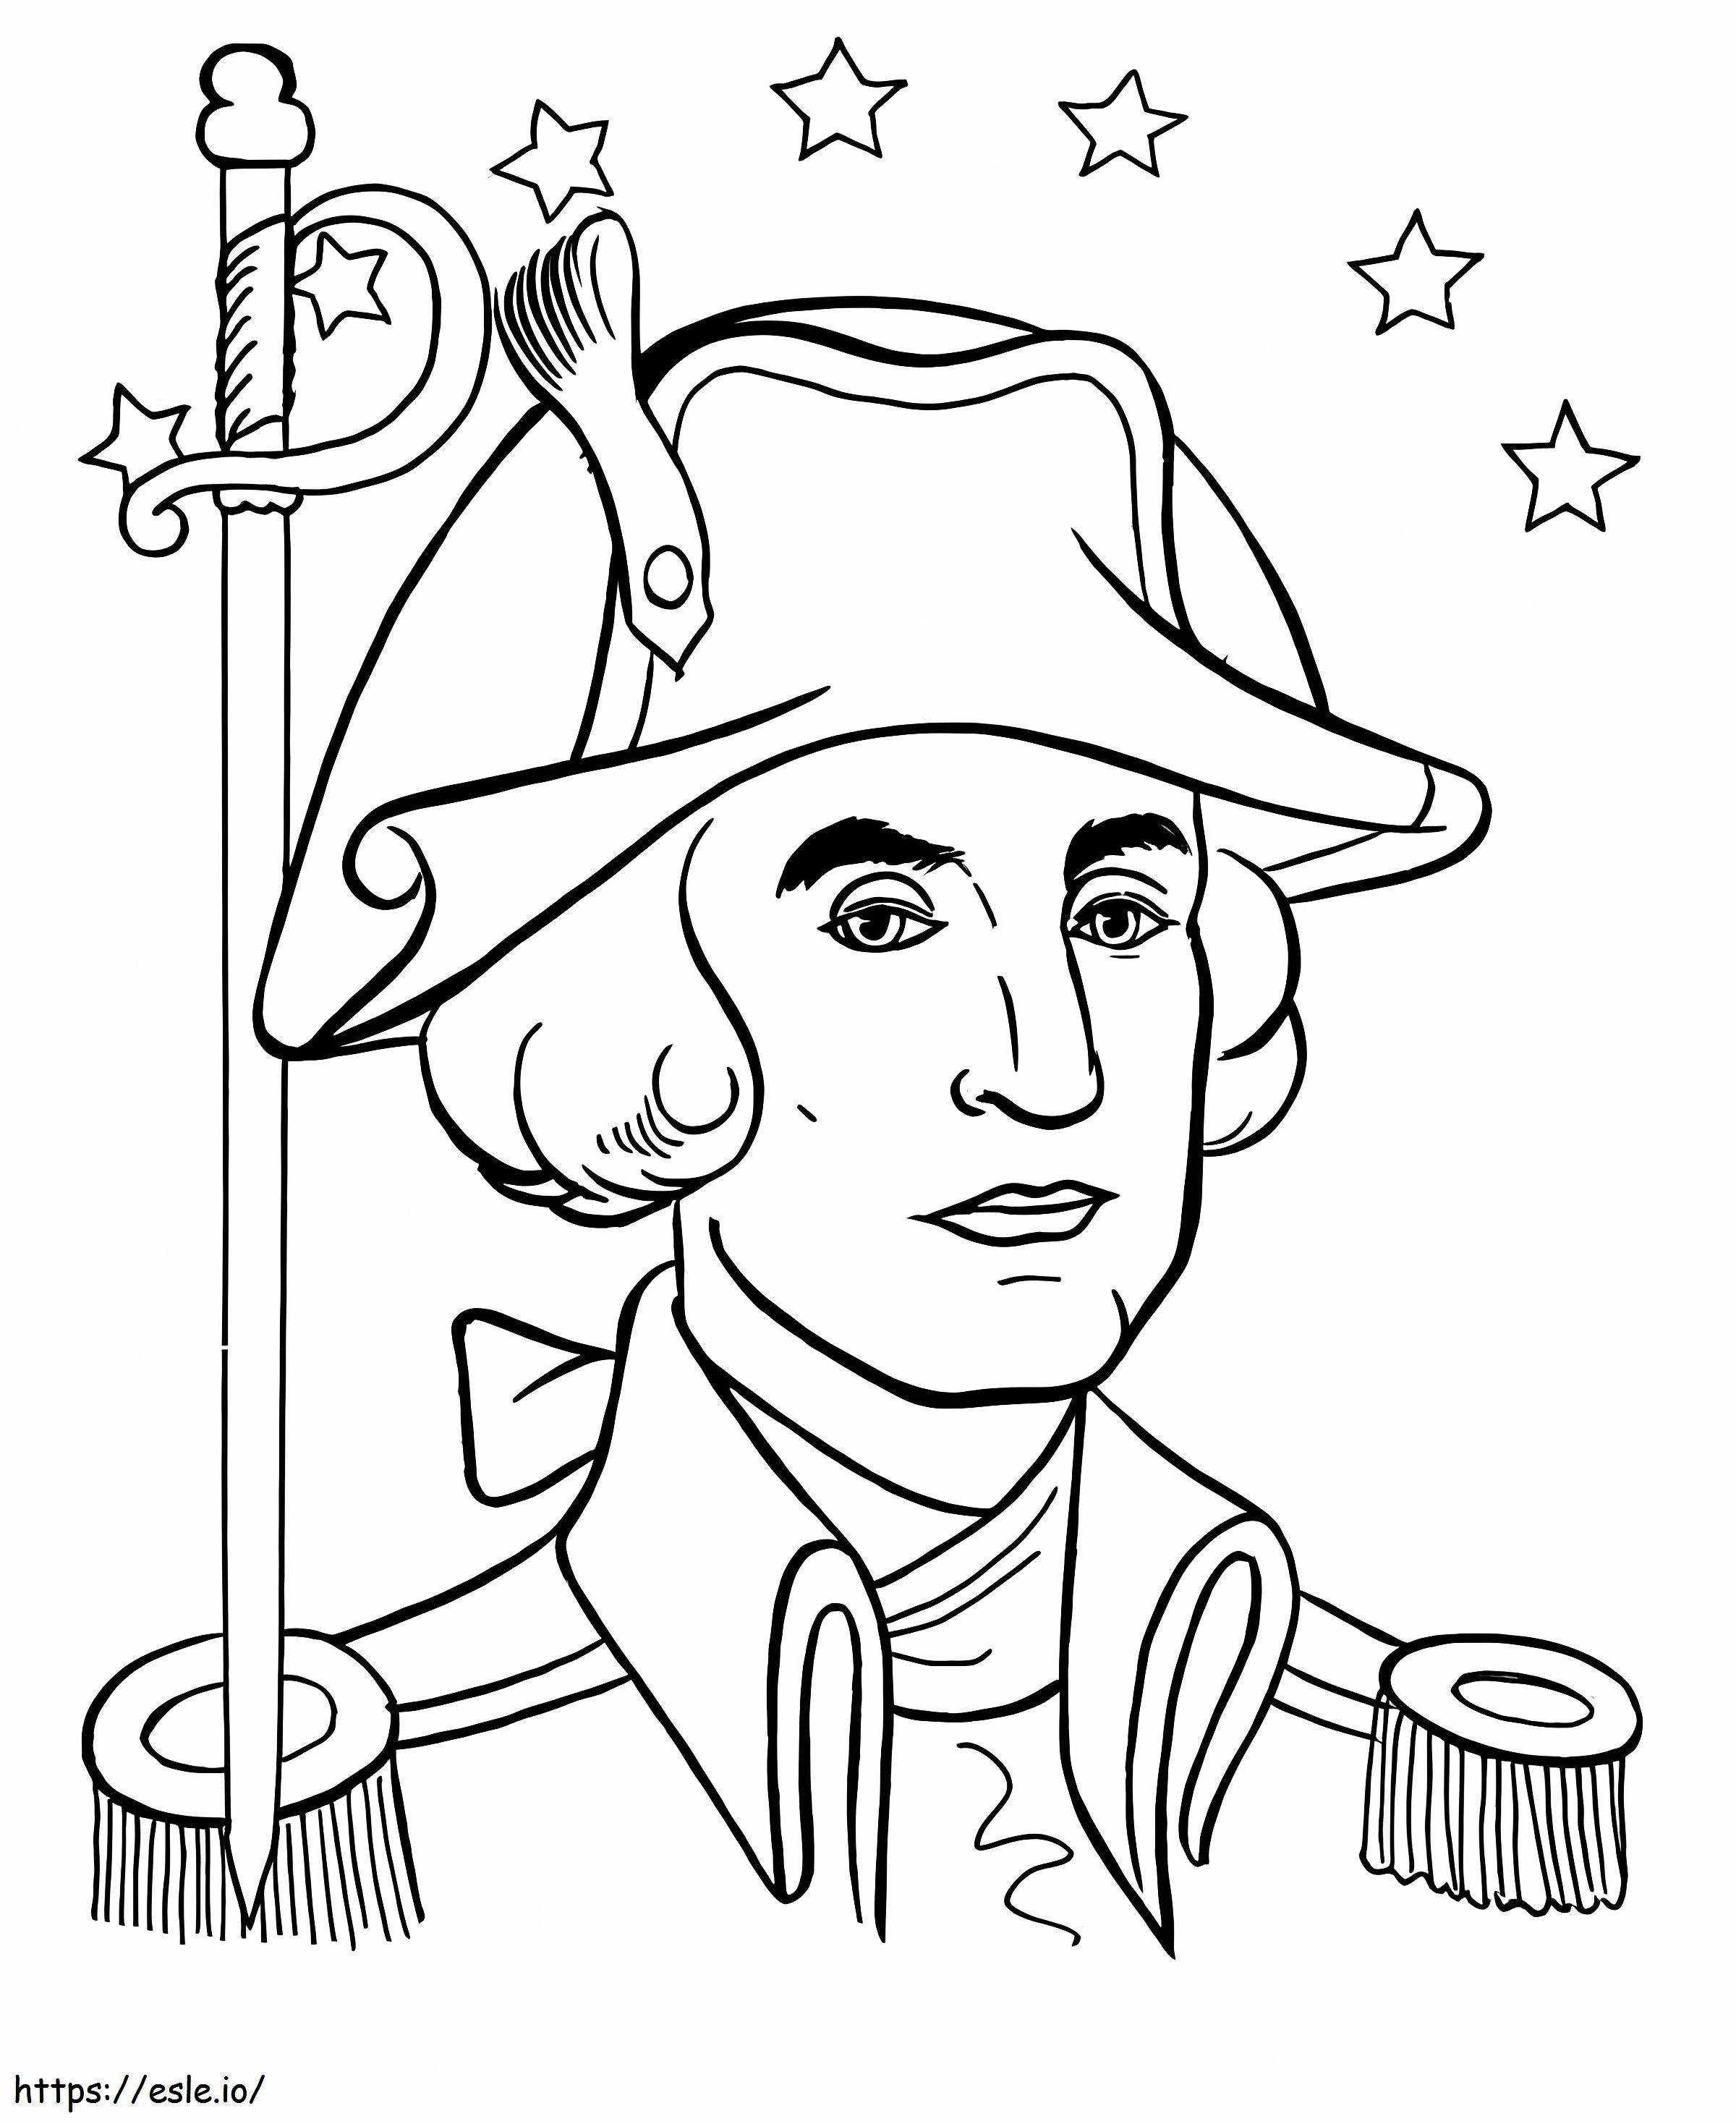 Coloriage Georges Washington 2 à imprimer dessin